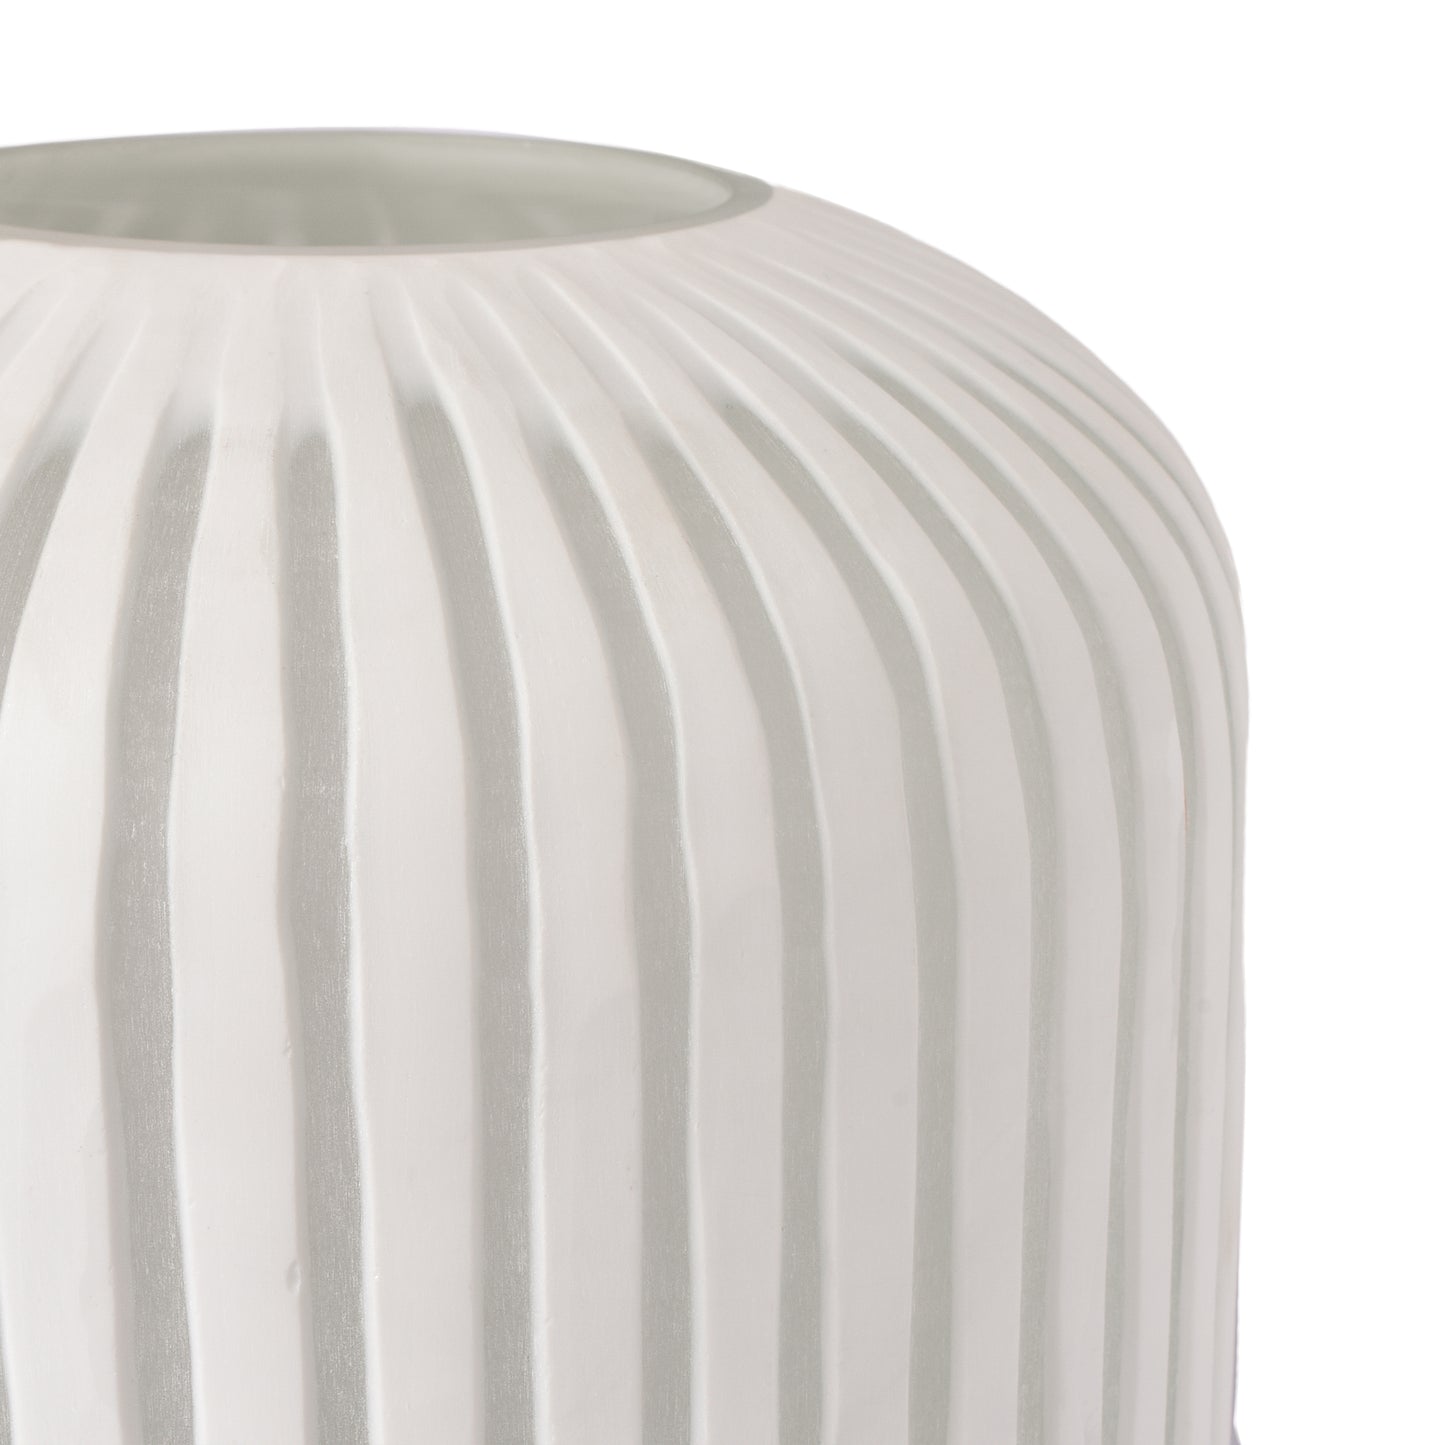 White Glass/Stone Flower small Vase for Elegant Home Decor-HomenEarth description